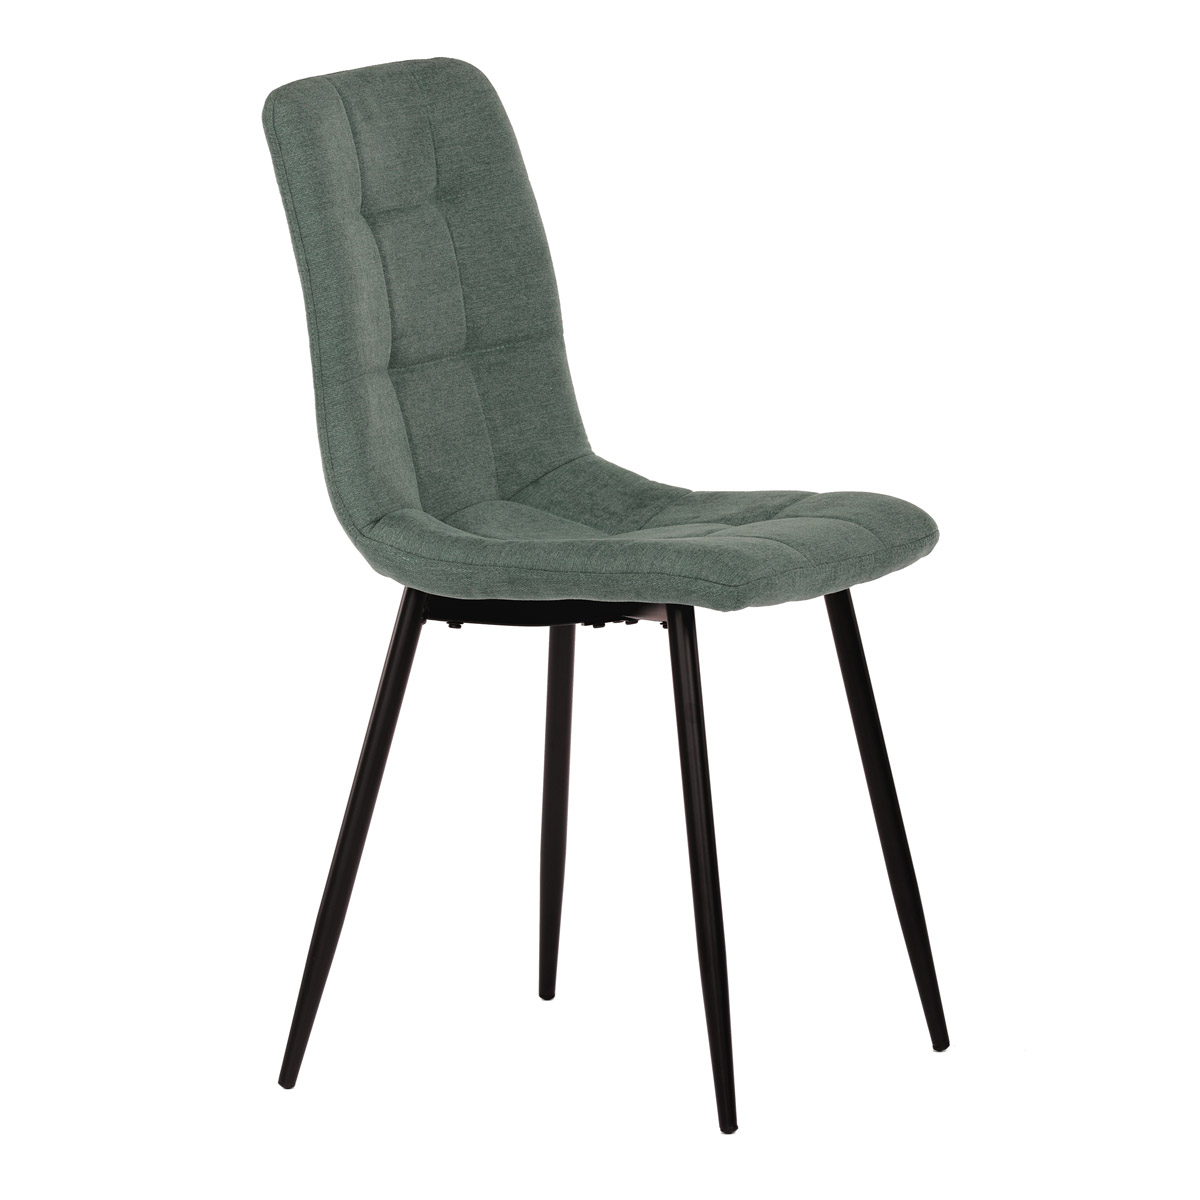 Jídelní židle, potah zelená látka, kovová čtyřnohá podnož, černý mat